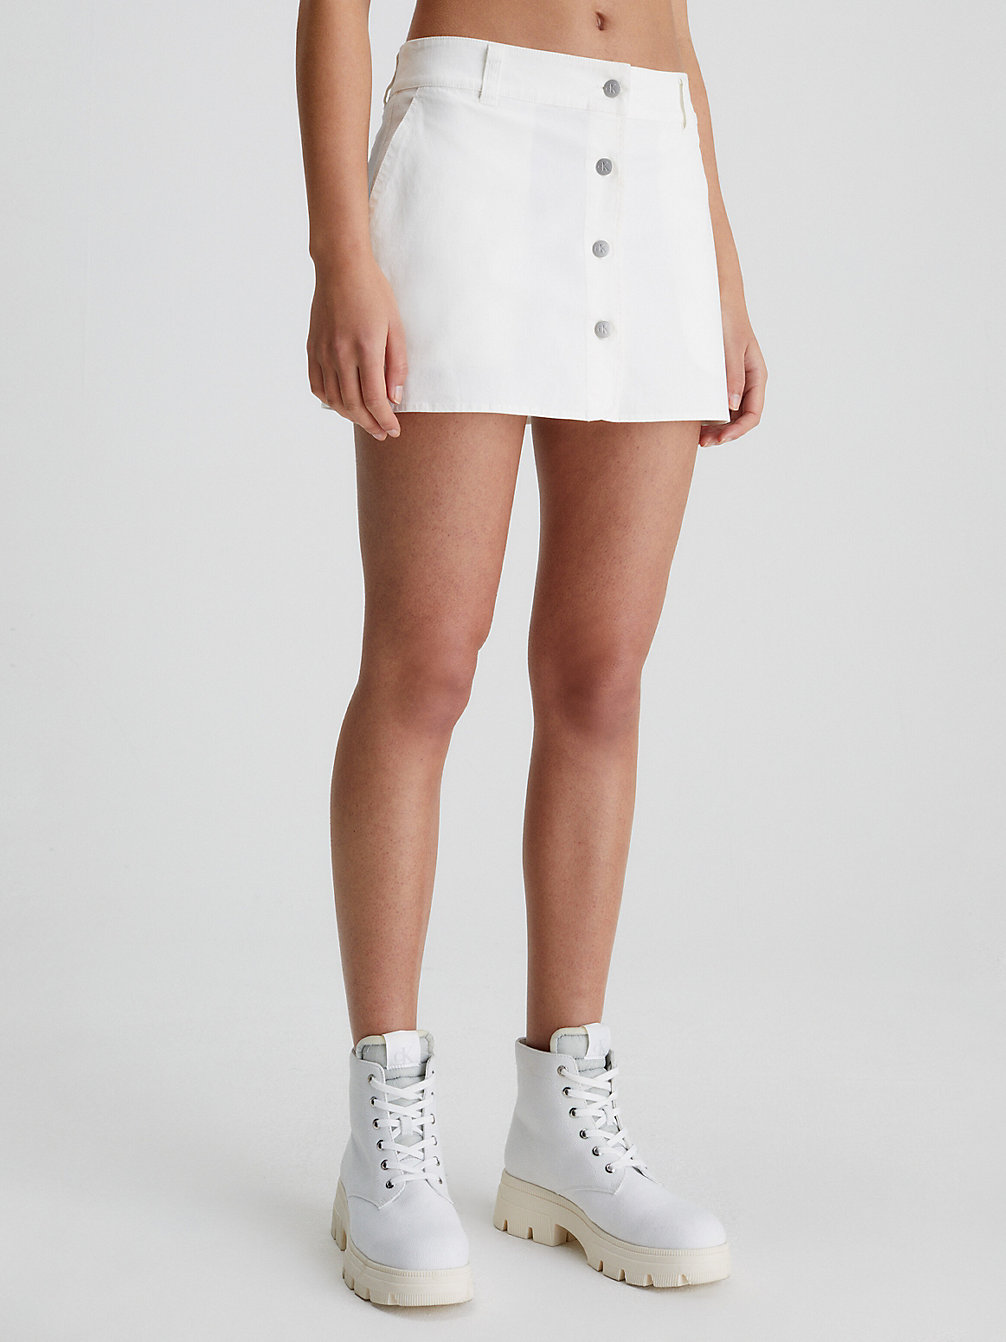 ANCIENT WHITE > Spódnica Micro Mini Z Bawełnianego Płótna > undefined Kobiety - Calvin Klein